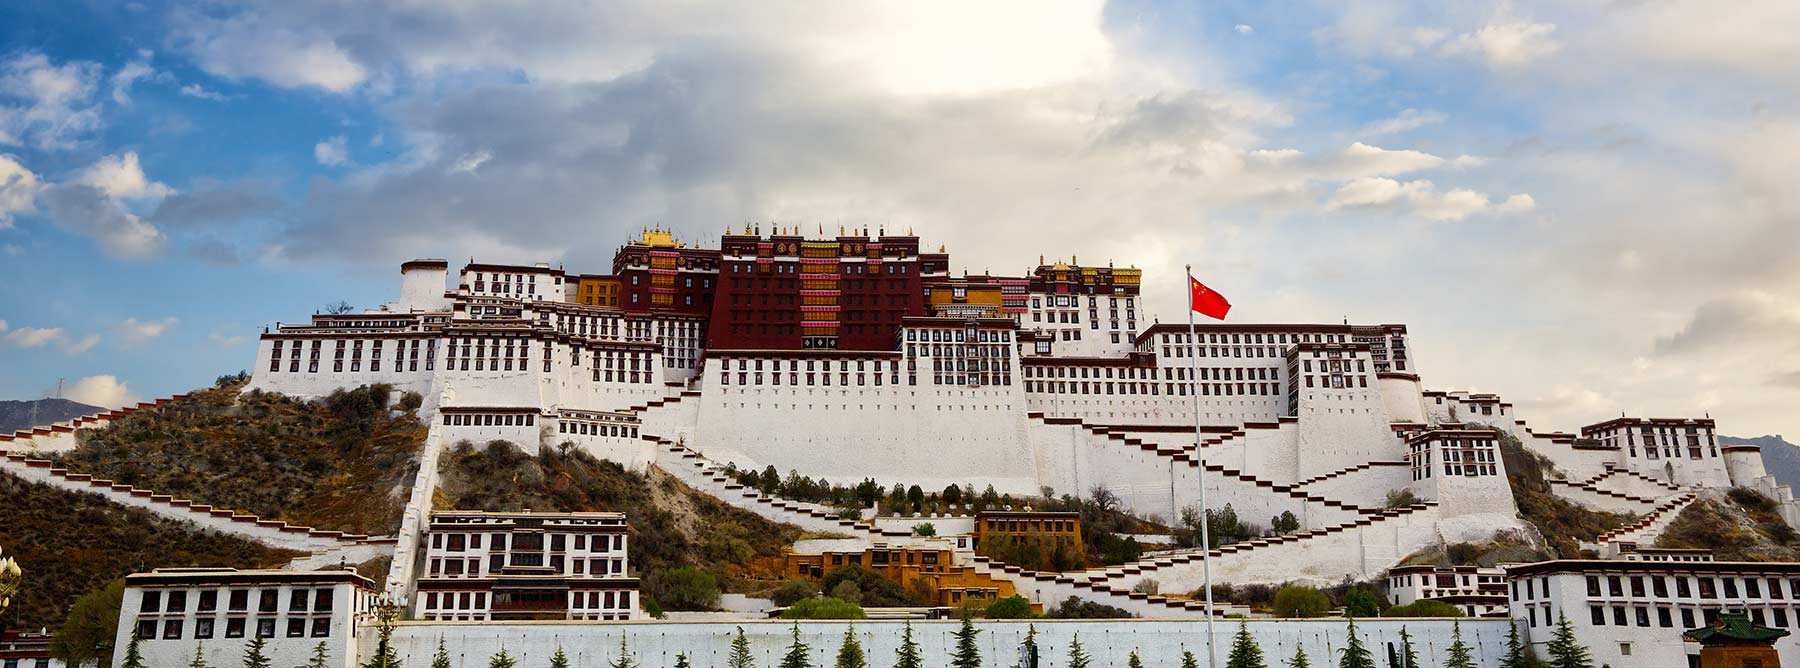 tibet tour from chengdu